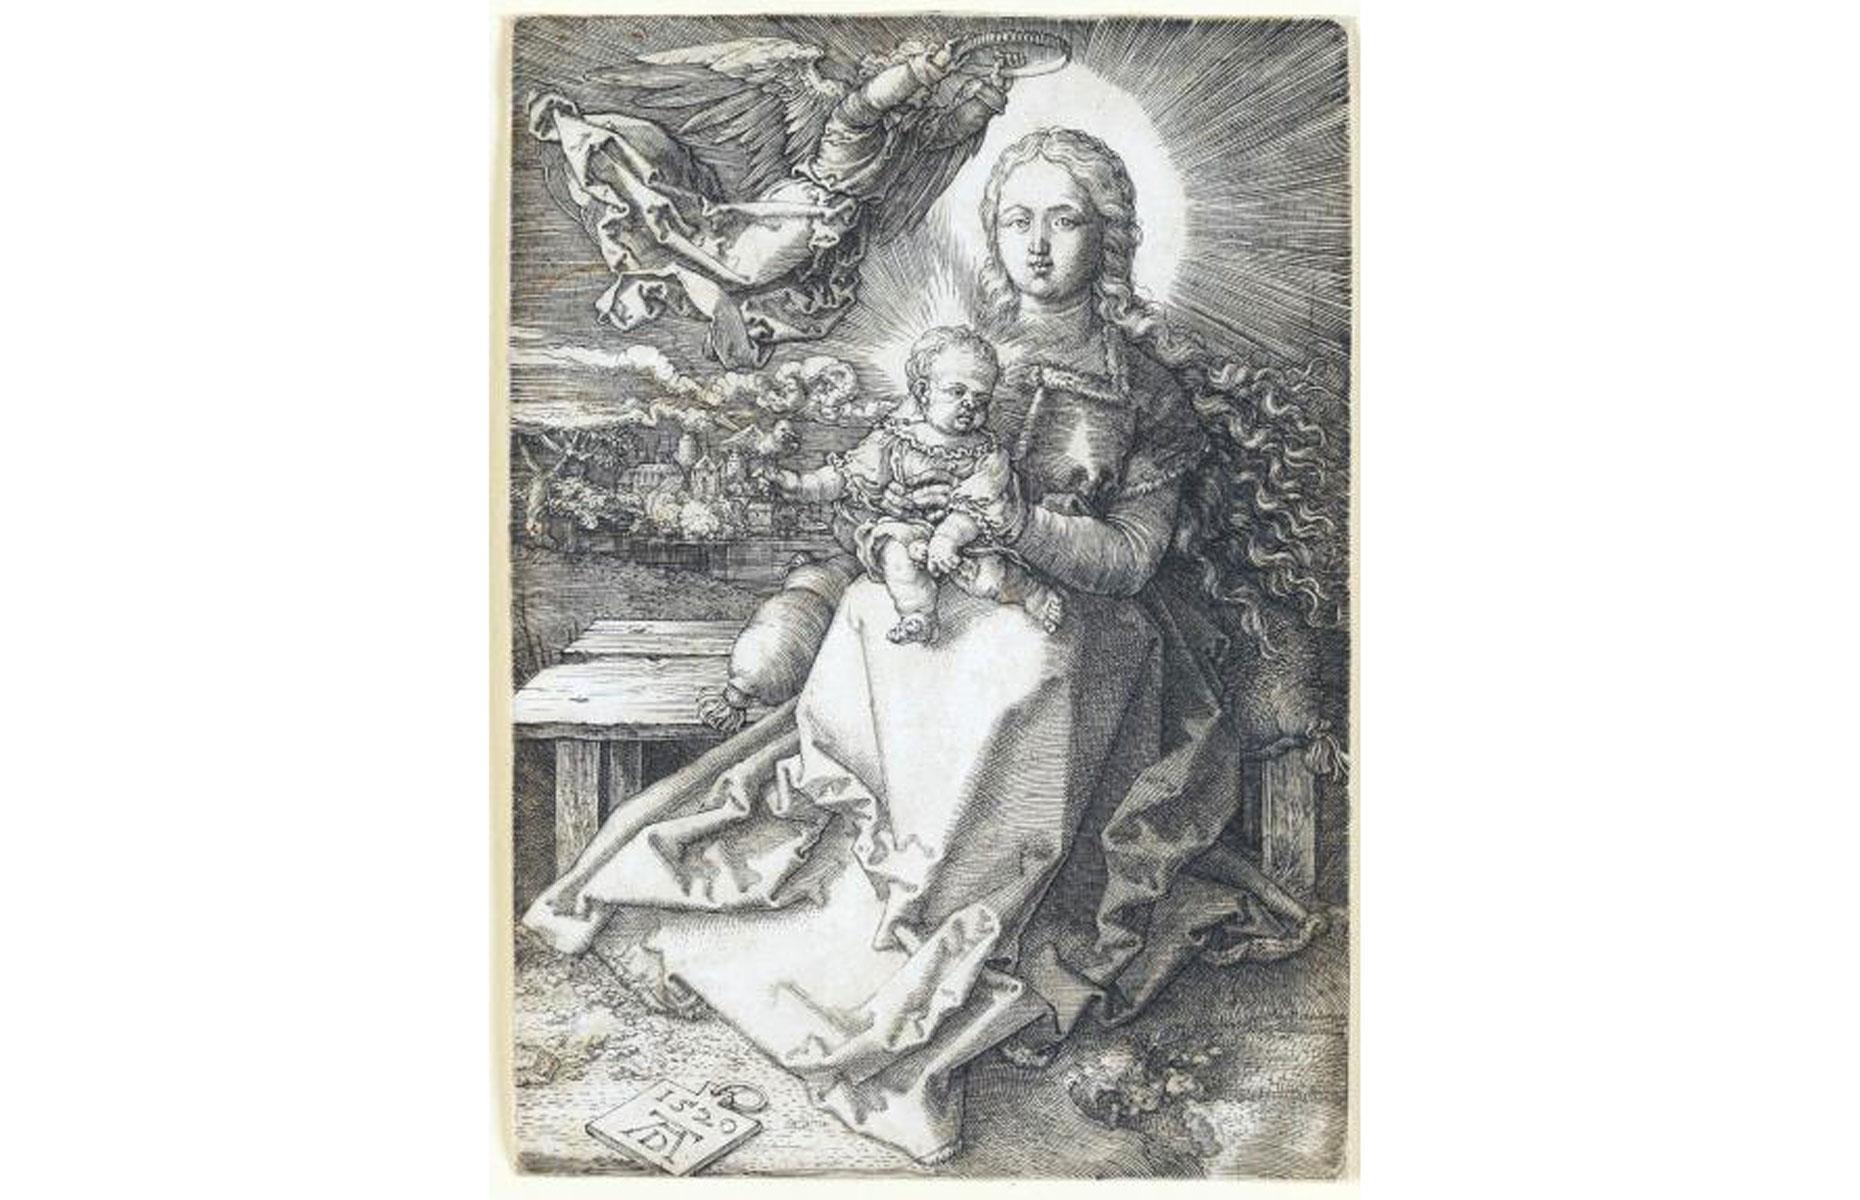 The Albrecht Dürer engraving 